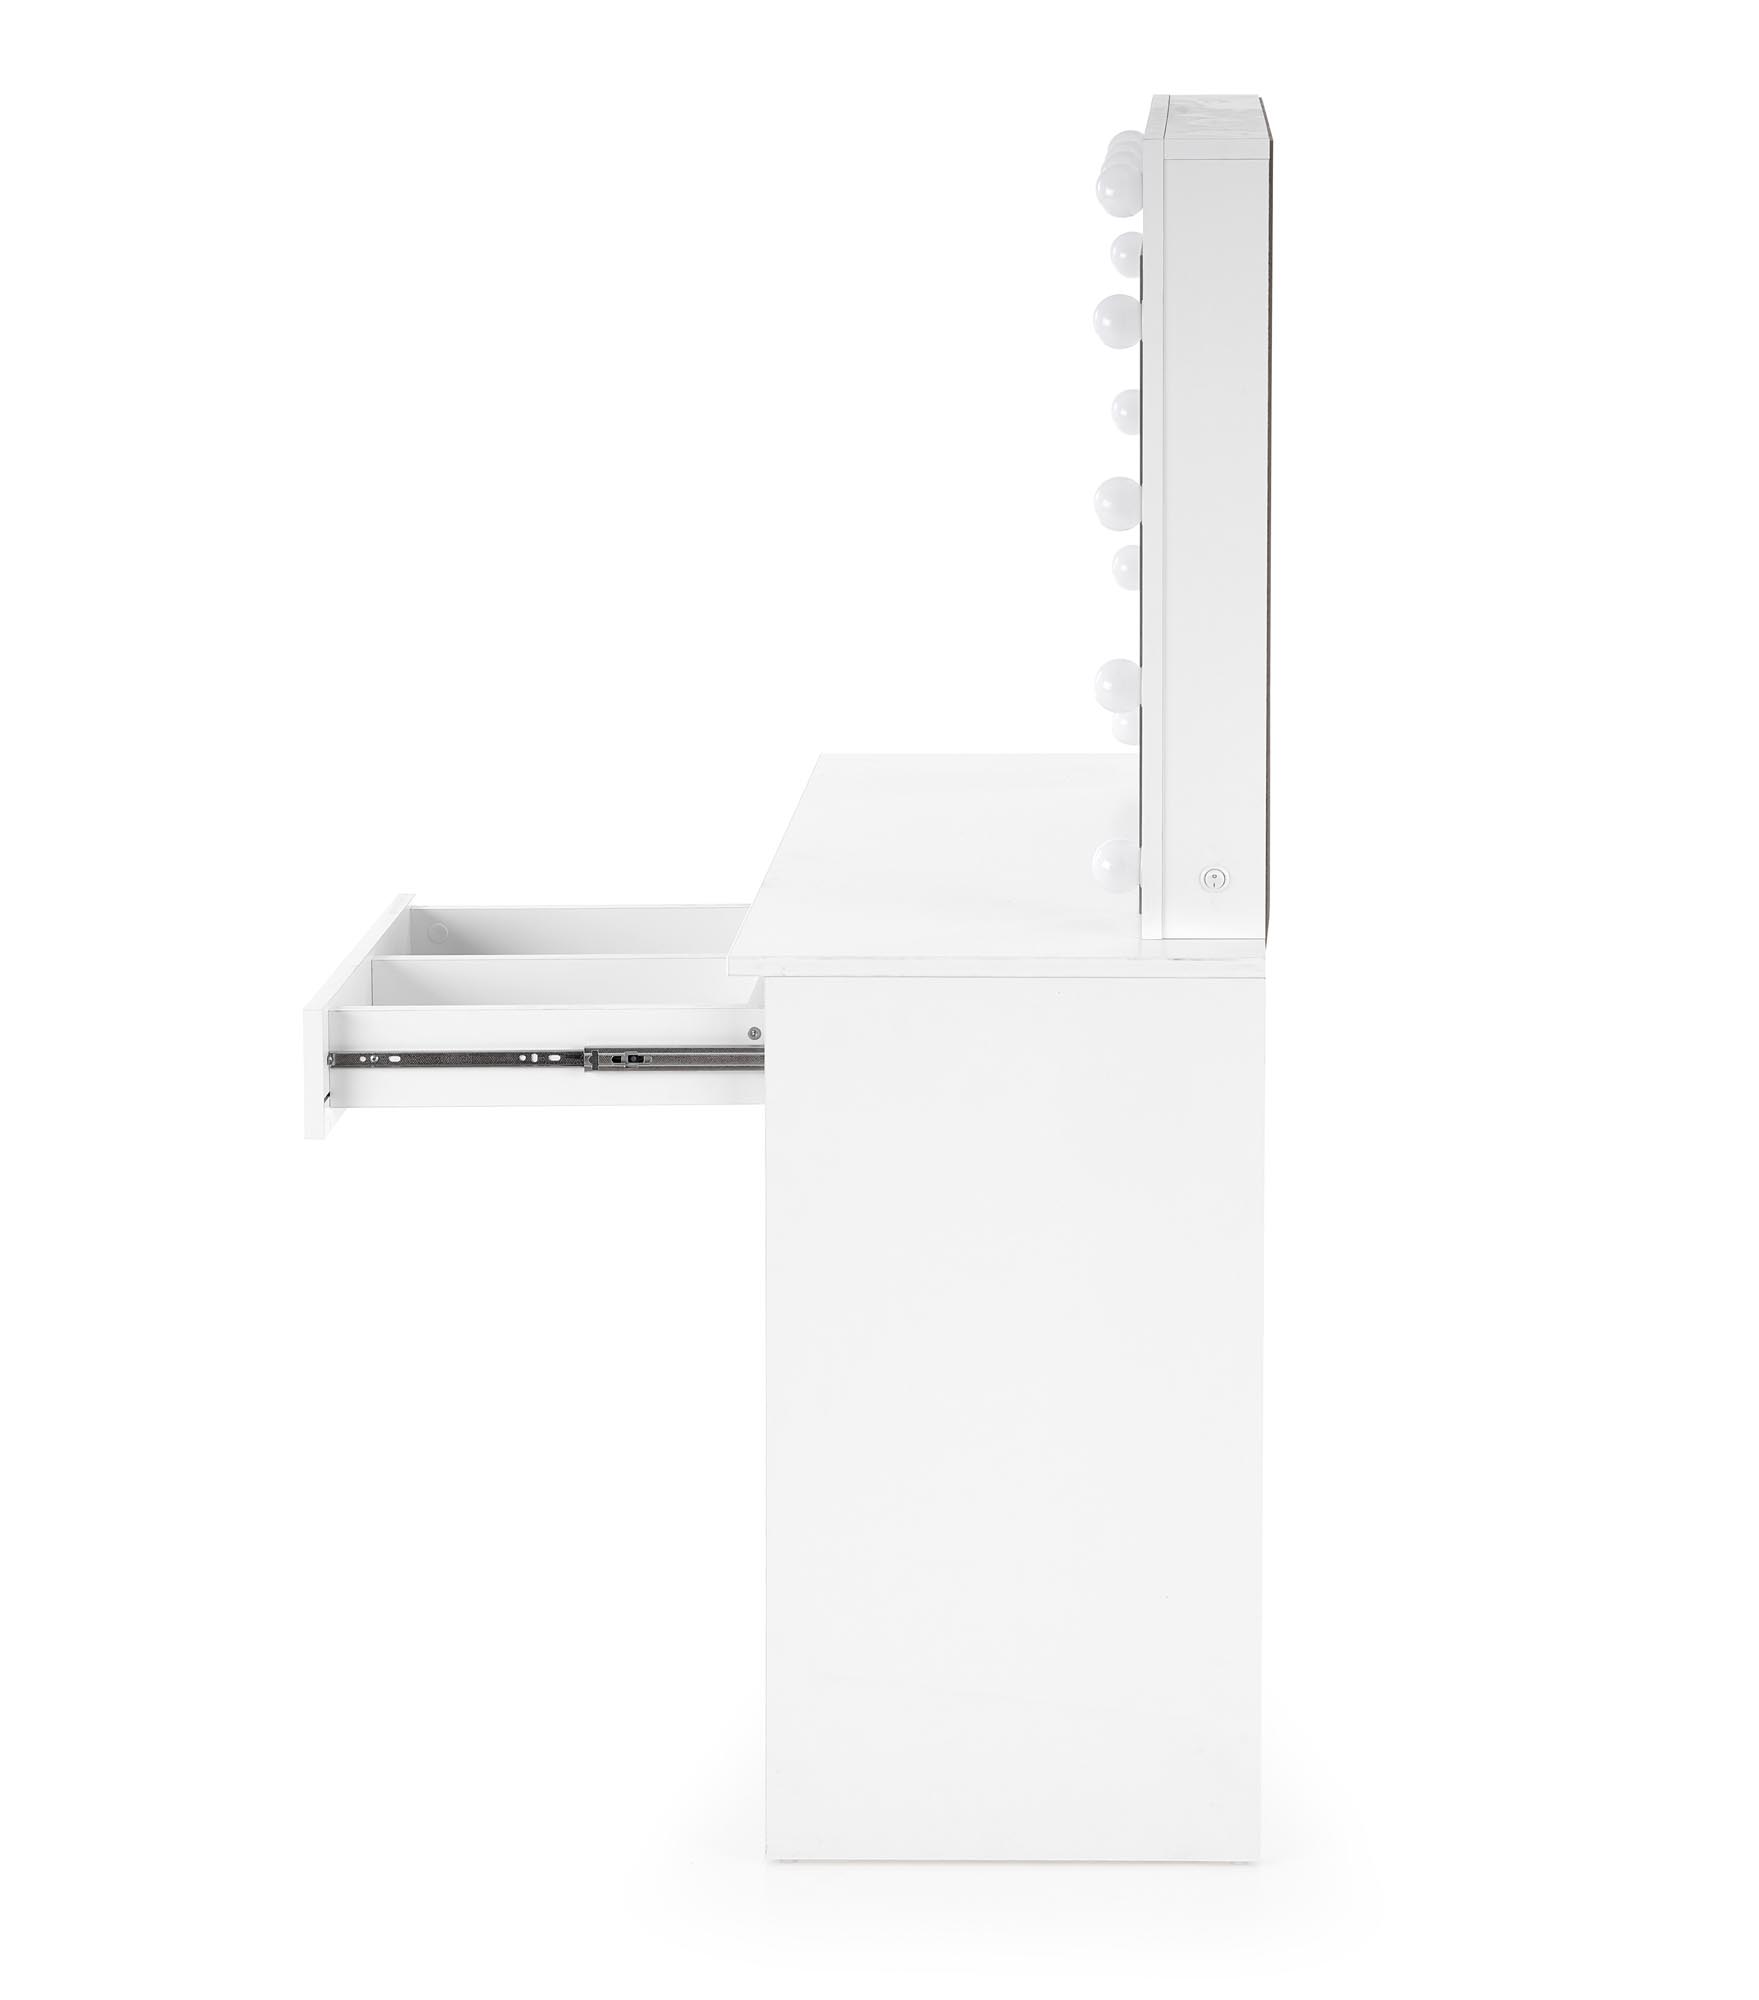 Toaletní Stolek Hollywood s osvětlením - bílá moderní Toaletní stolek Hollywood s osvětlením - Bílý